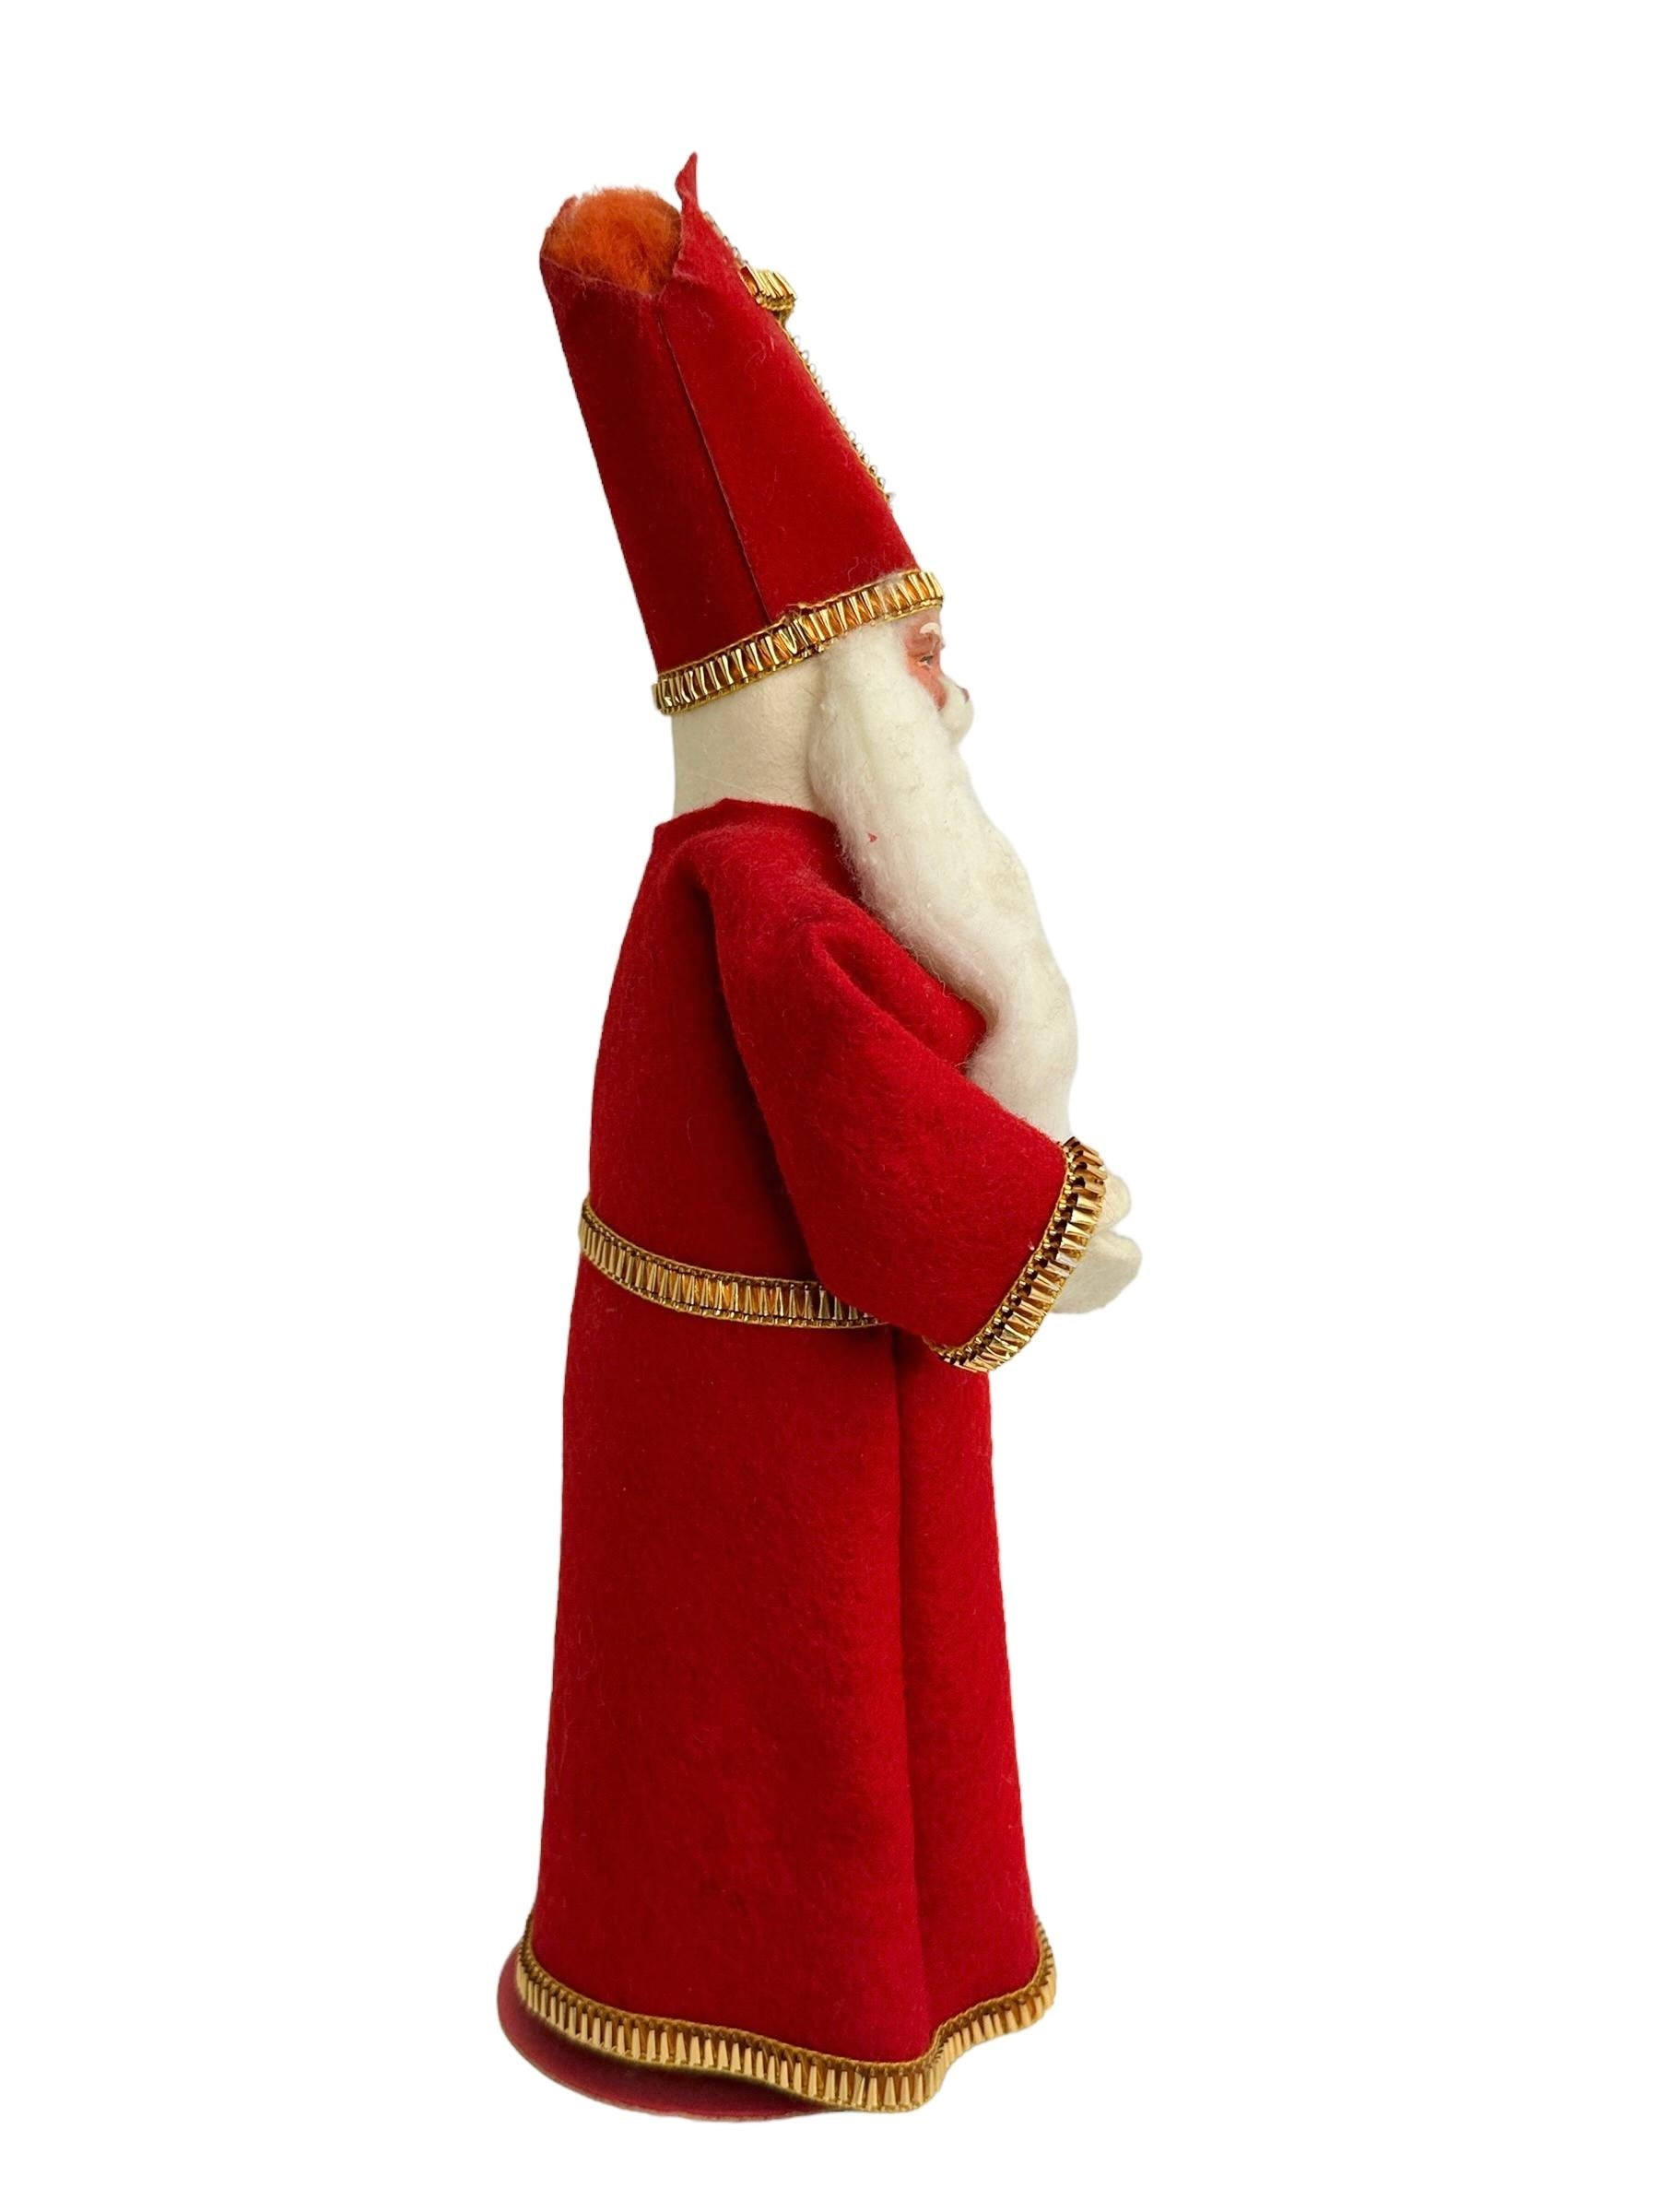 Diese Vintage-Weihnachtsmannfigur aus Komposition, Karton, Filz und Pappmaché stammt aus dem 20. Jahrhundert und ist eine charmante Ergänzung für jede Weihnachtssammlung. Dieses originalgetreue Stück wurde in Deutschland hergestellt und hat ein